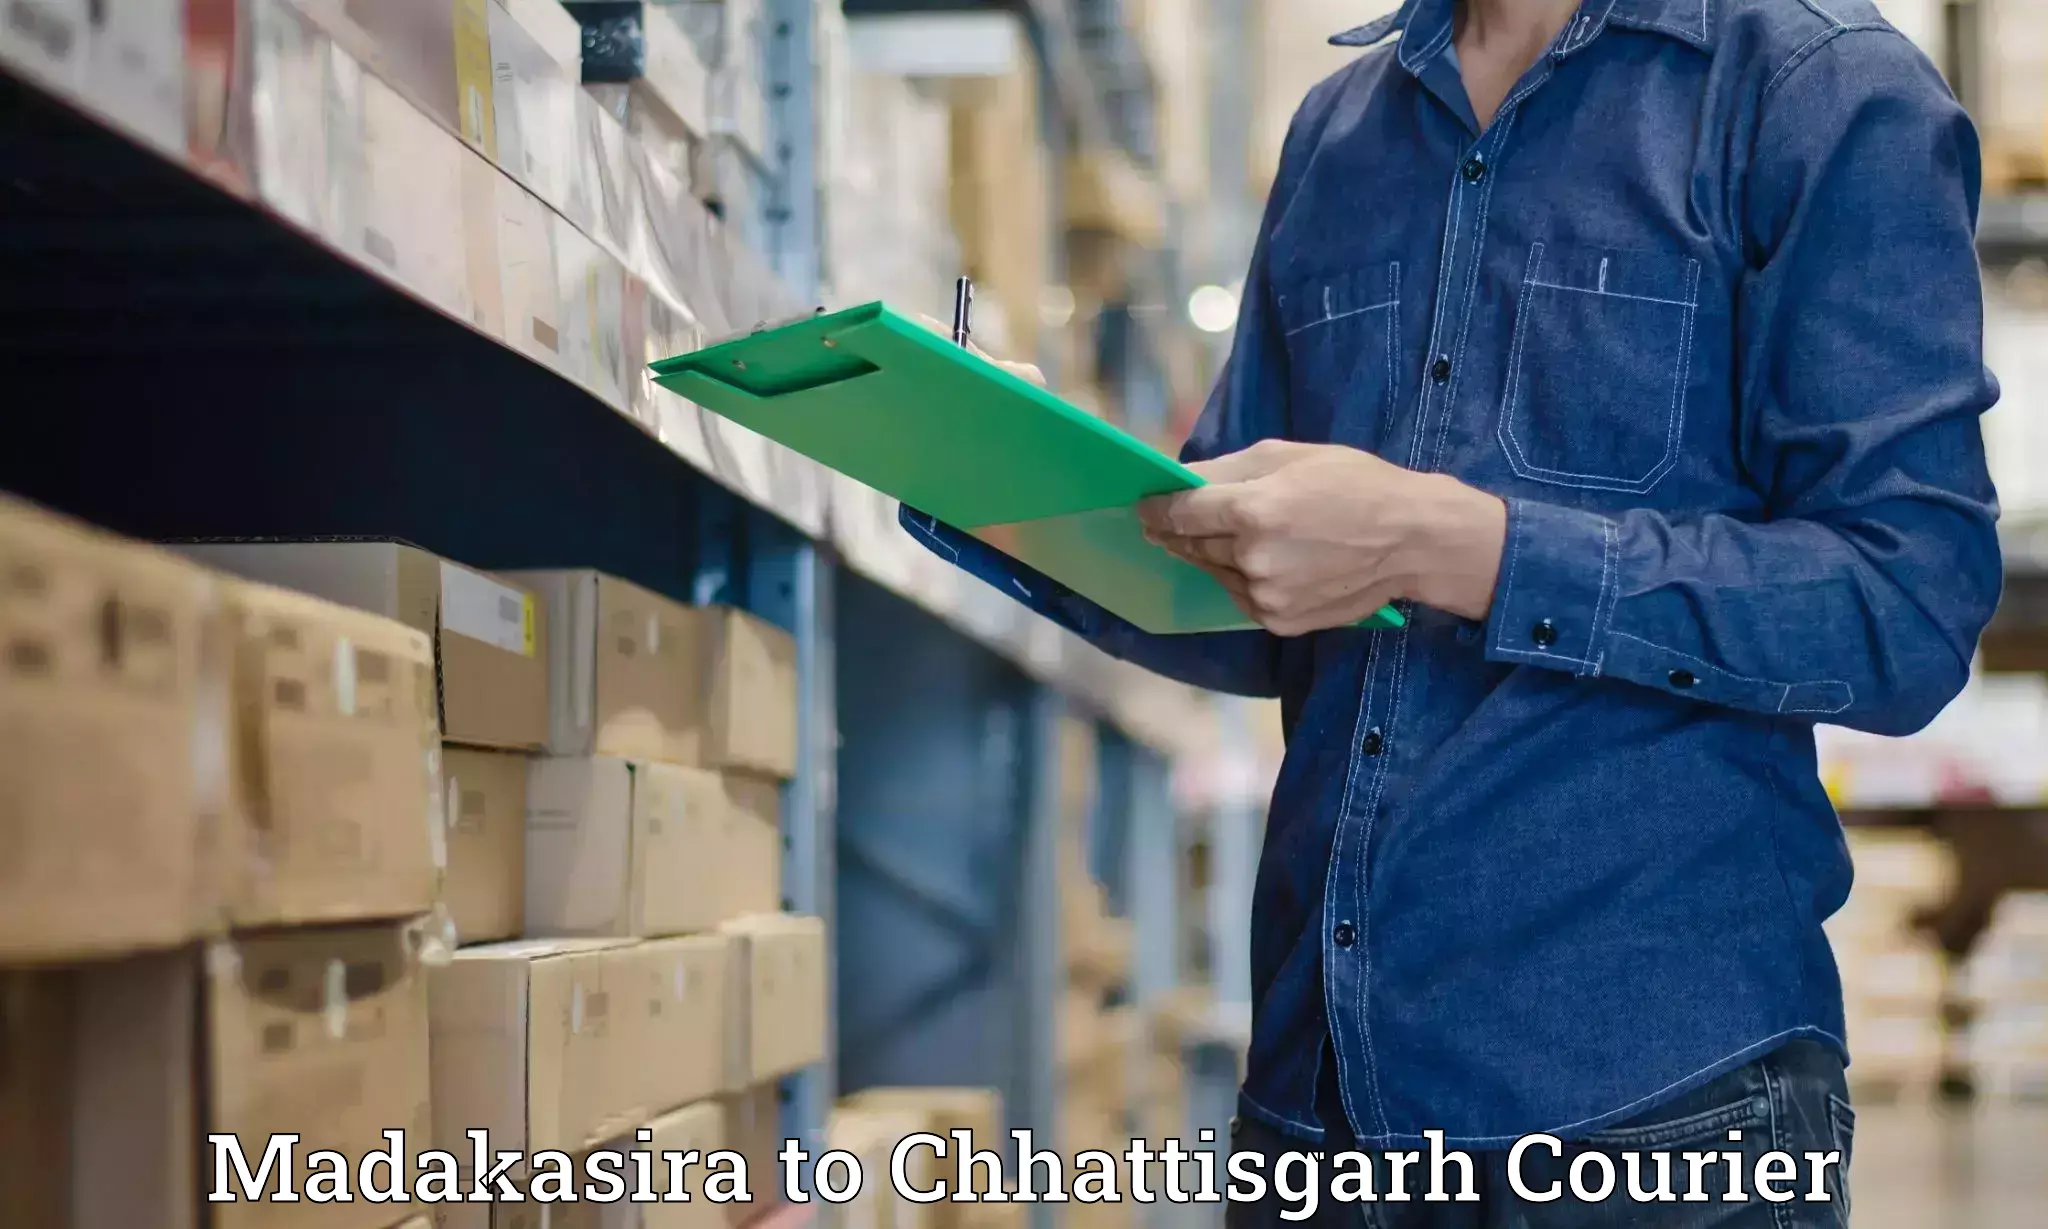 Efficient logistics management Madakasira to Raigarh Chhattisgarh